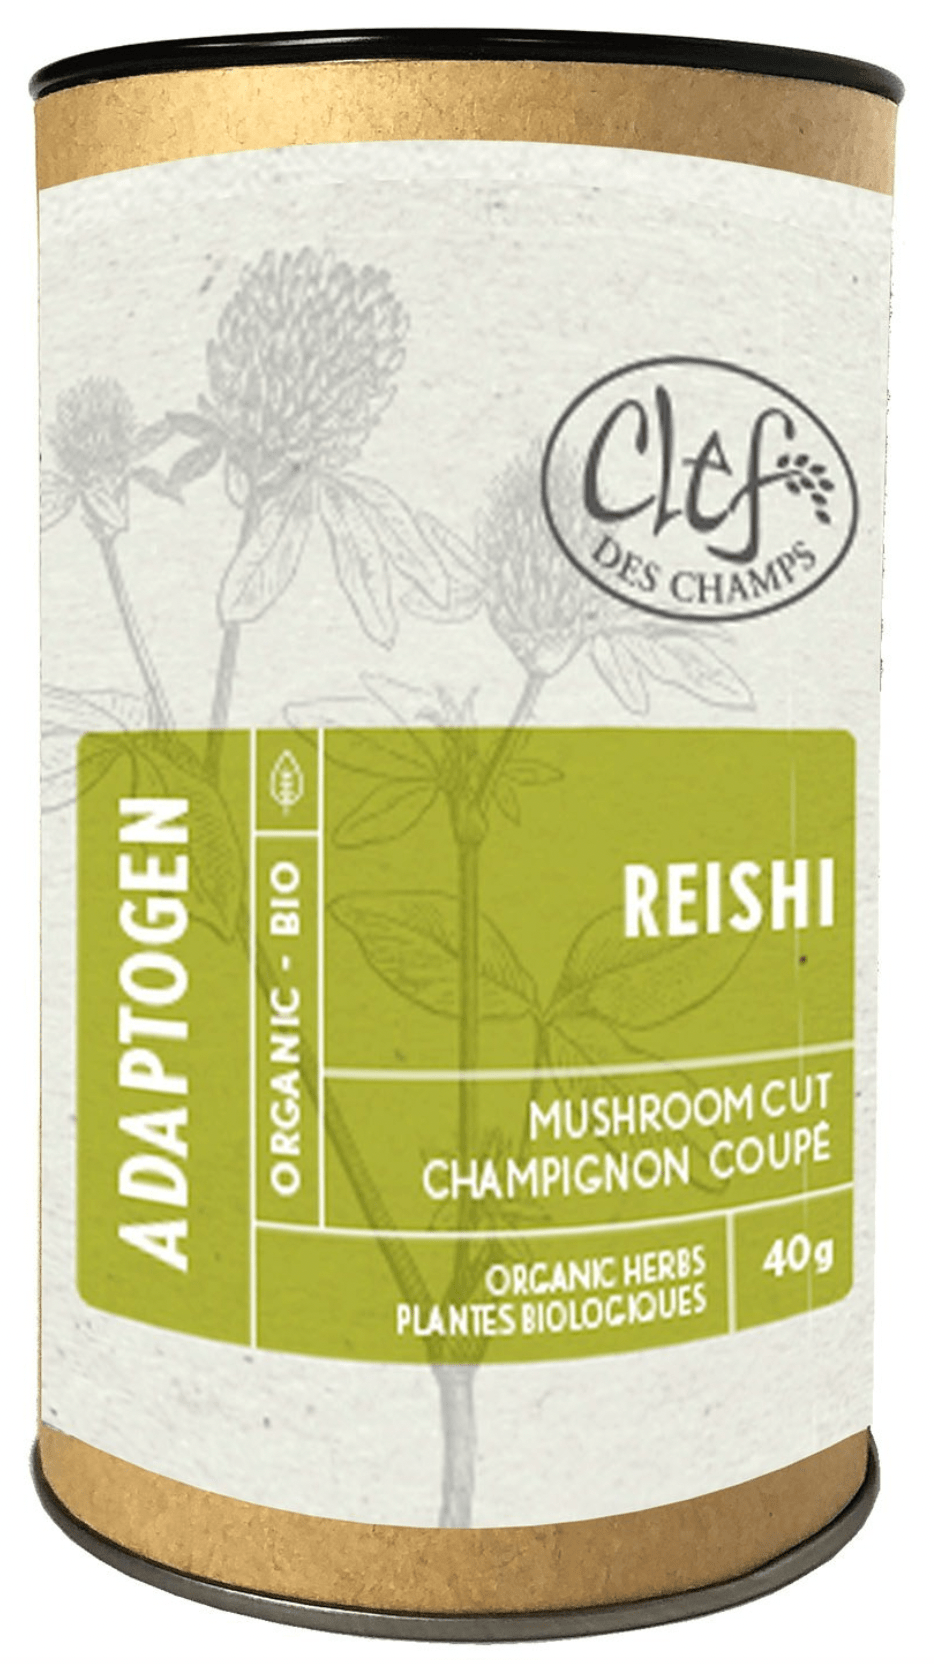 CLEF DES CHAMPS Suppléments Reishi (champignon coupé) 40g